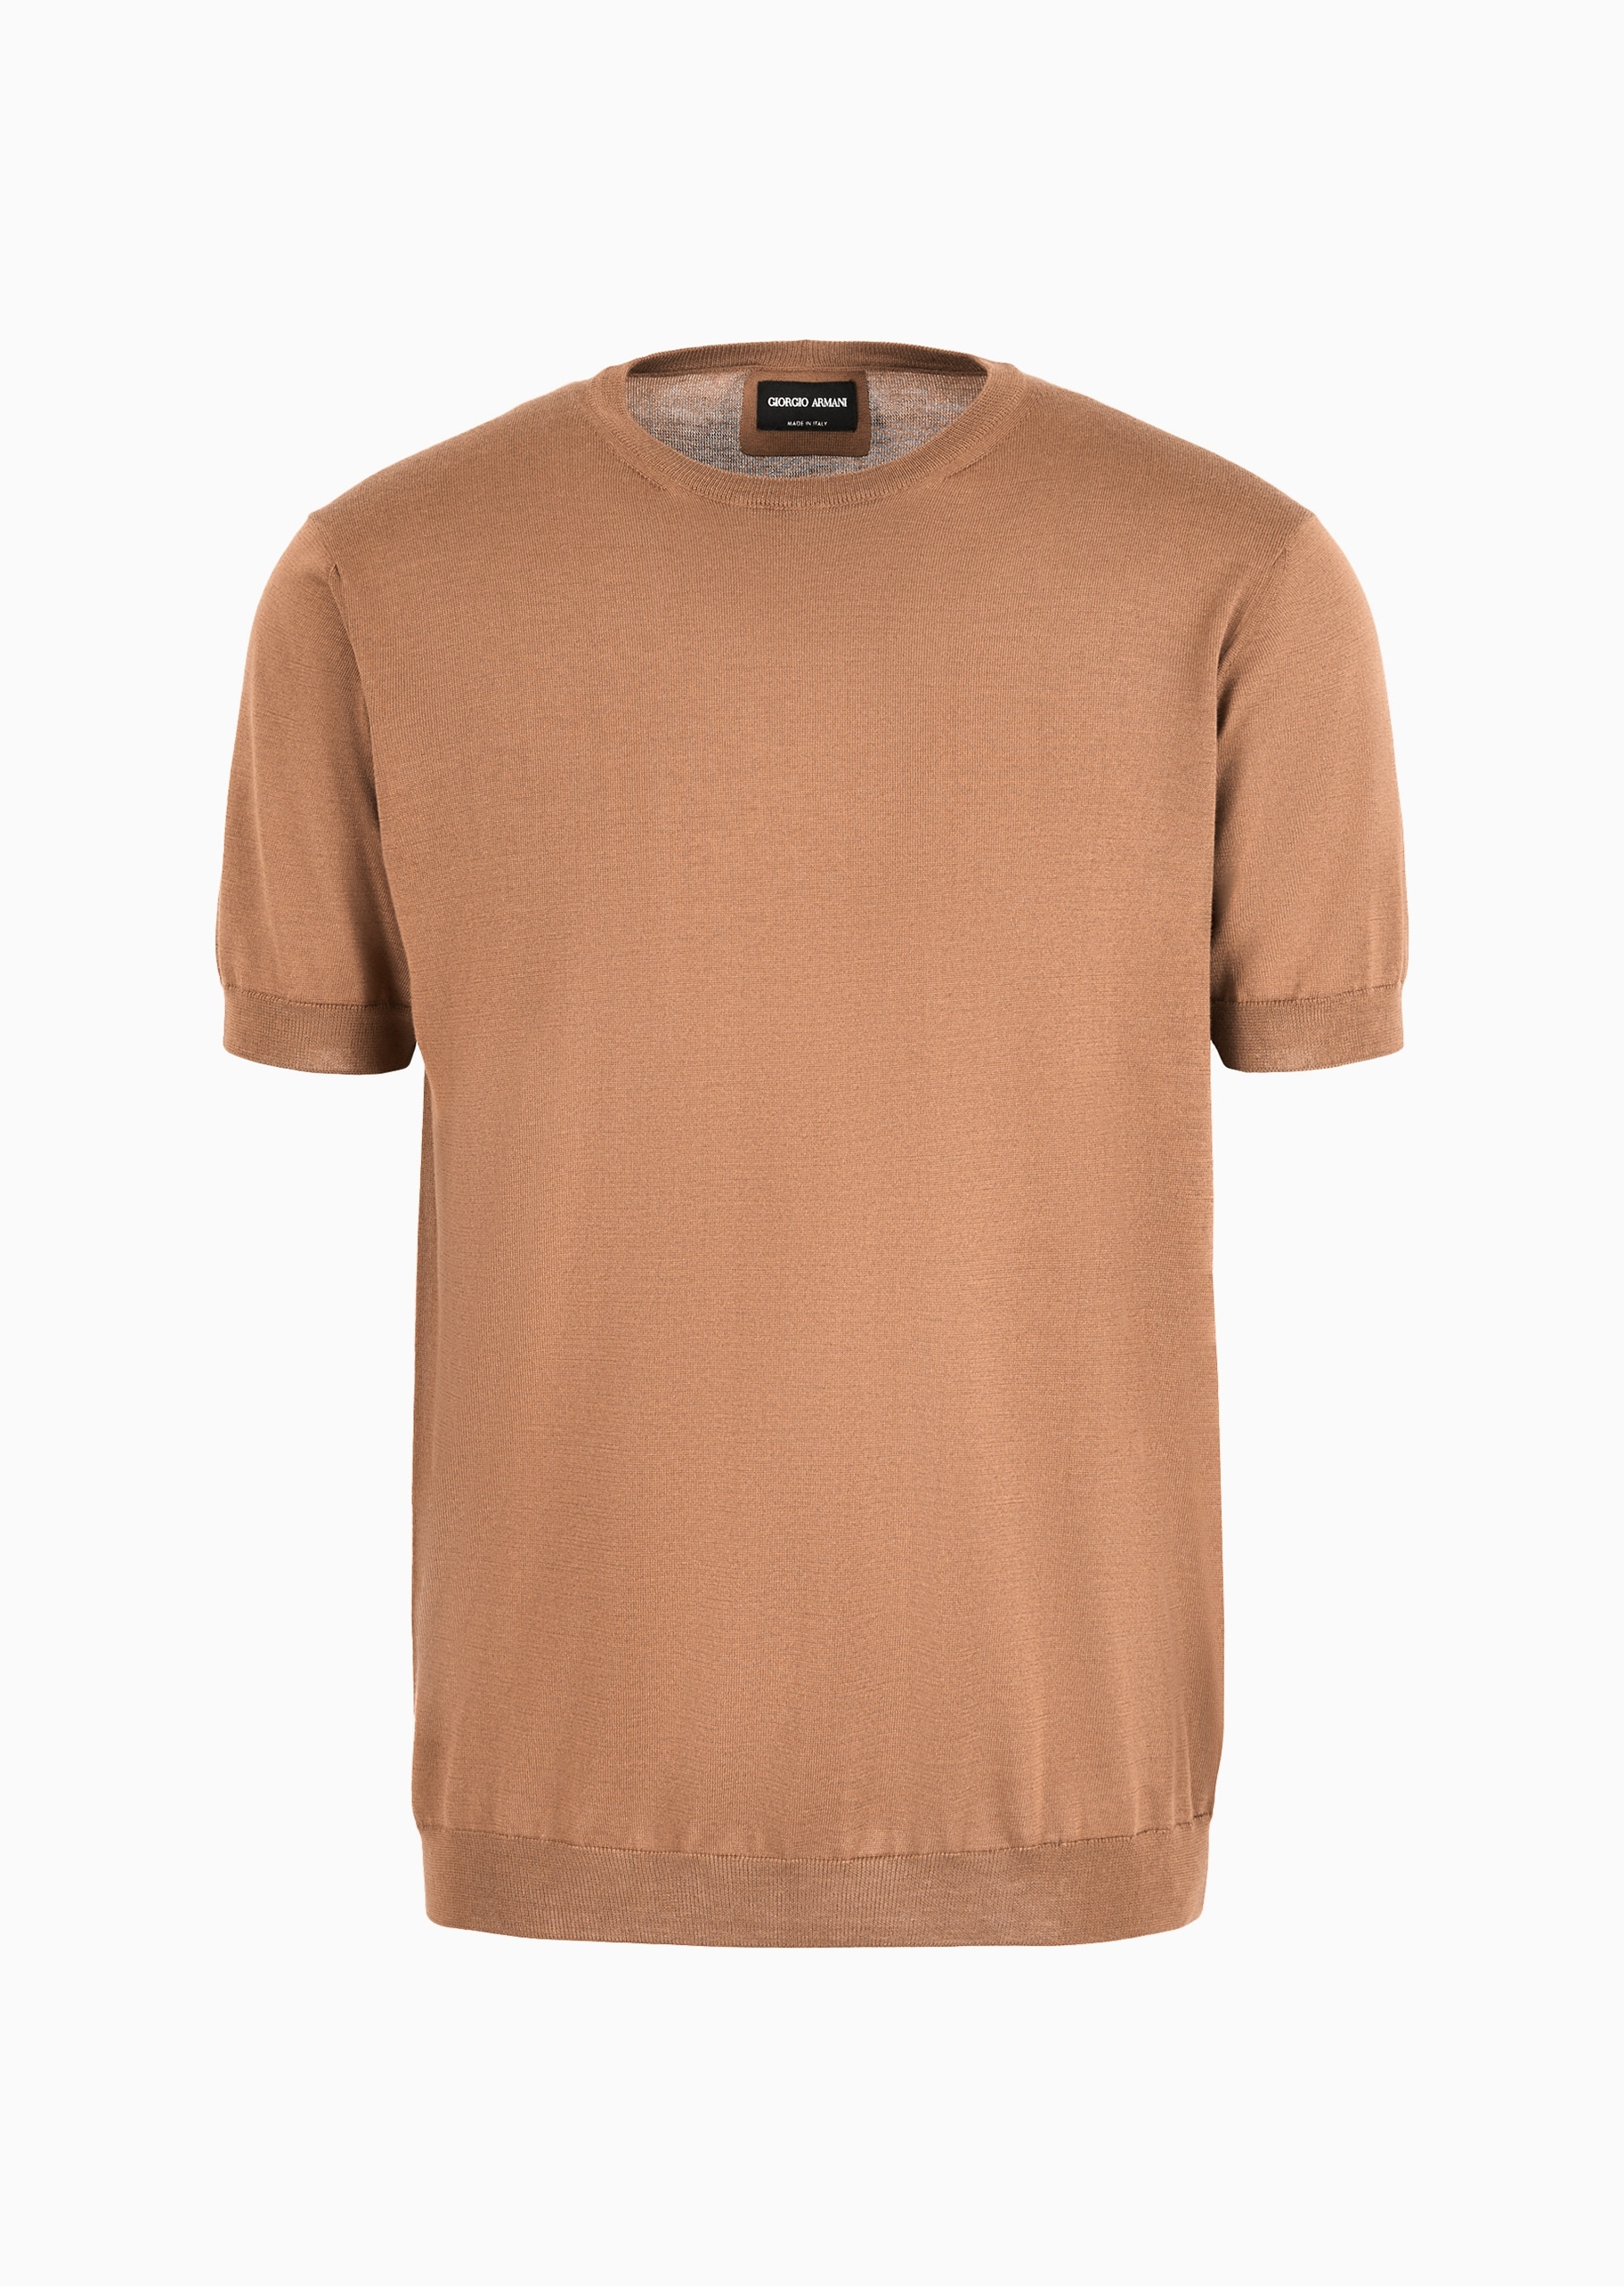 Giorgio Armani 男士合身短袖圆领休闲纯色针织T恤